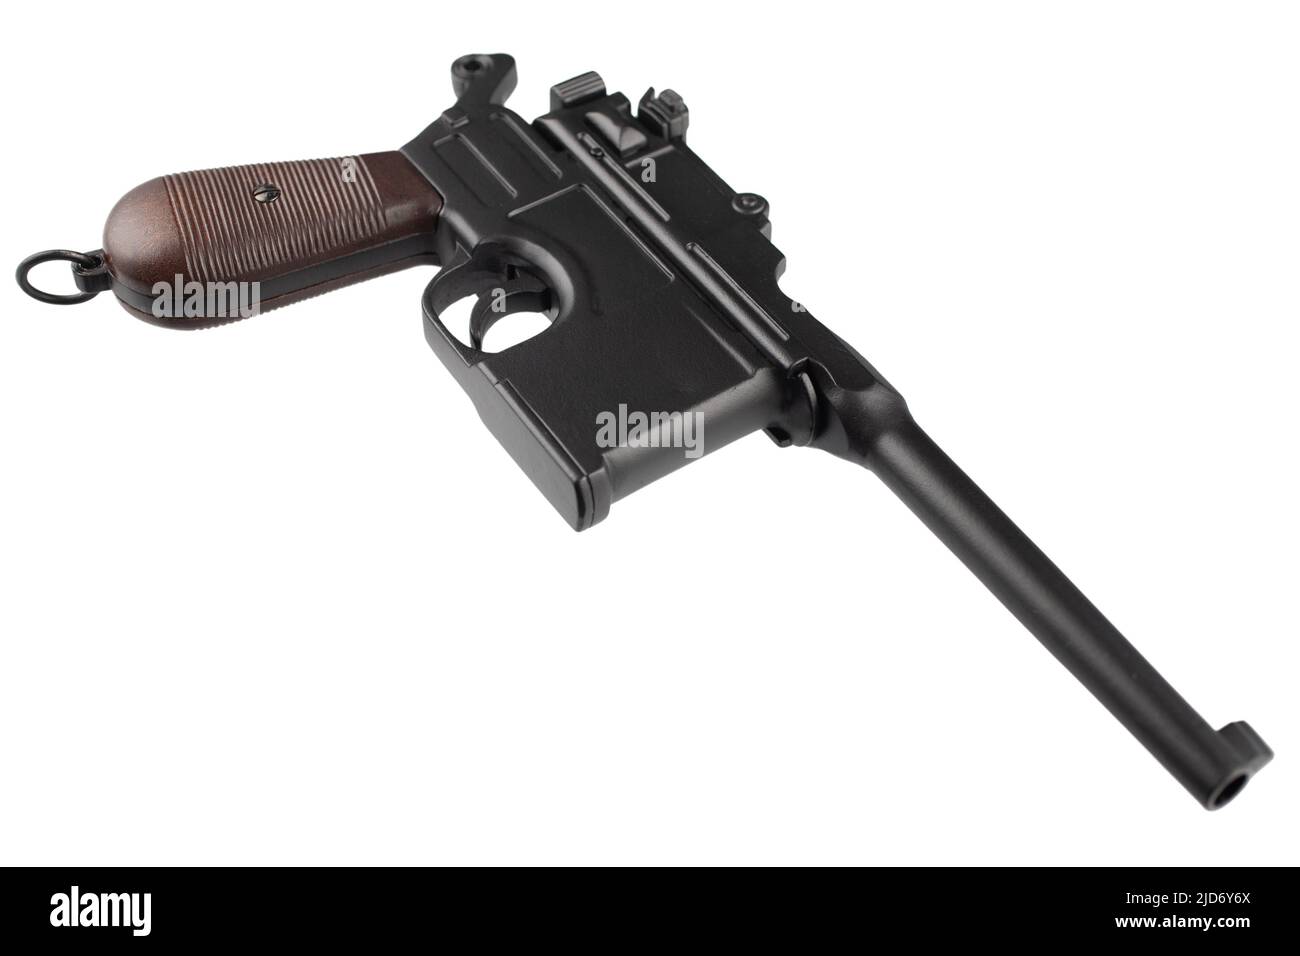 German WWI era pistol model 1896 isolated on white background. Stock Photo